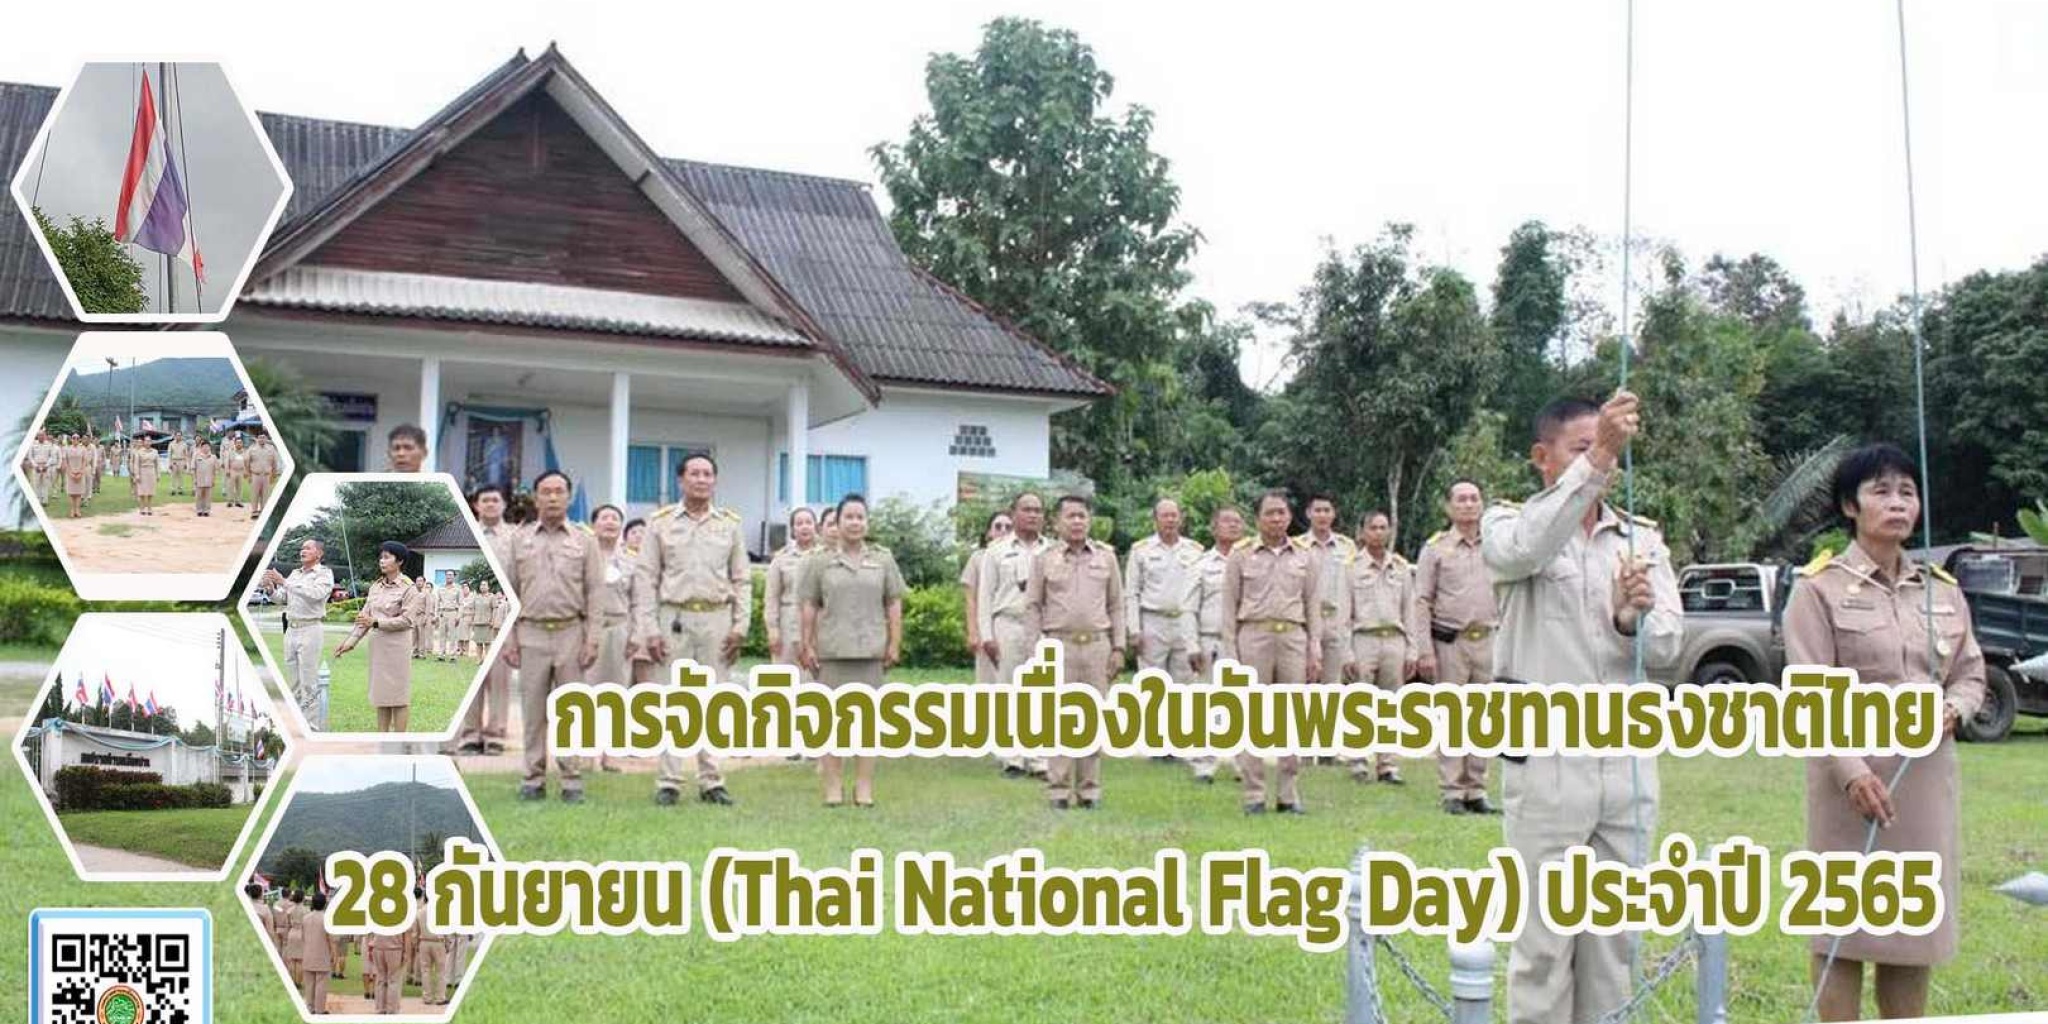 การจัดกิจกรรมเนื่องในวันพระราชทานธงชาติไทย 28 กันยายน (Thai  ...